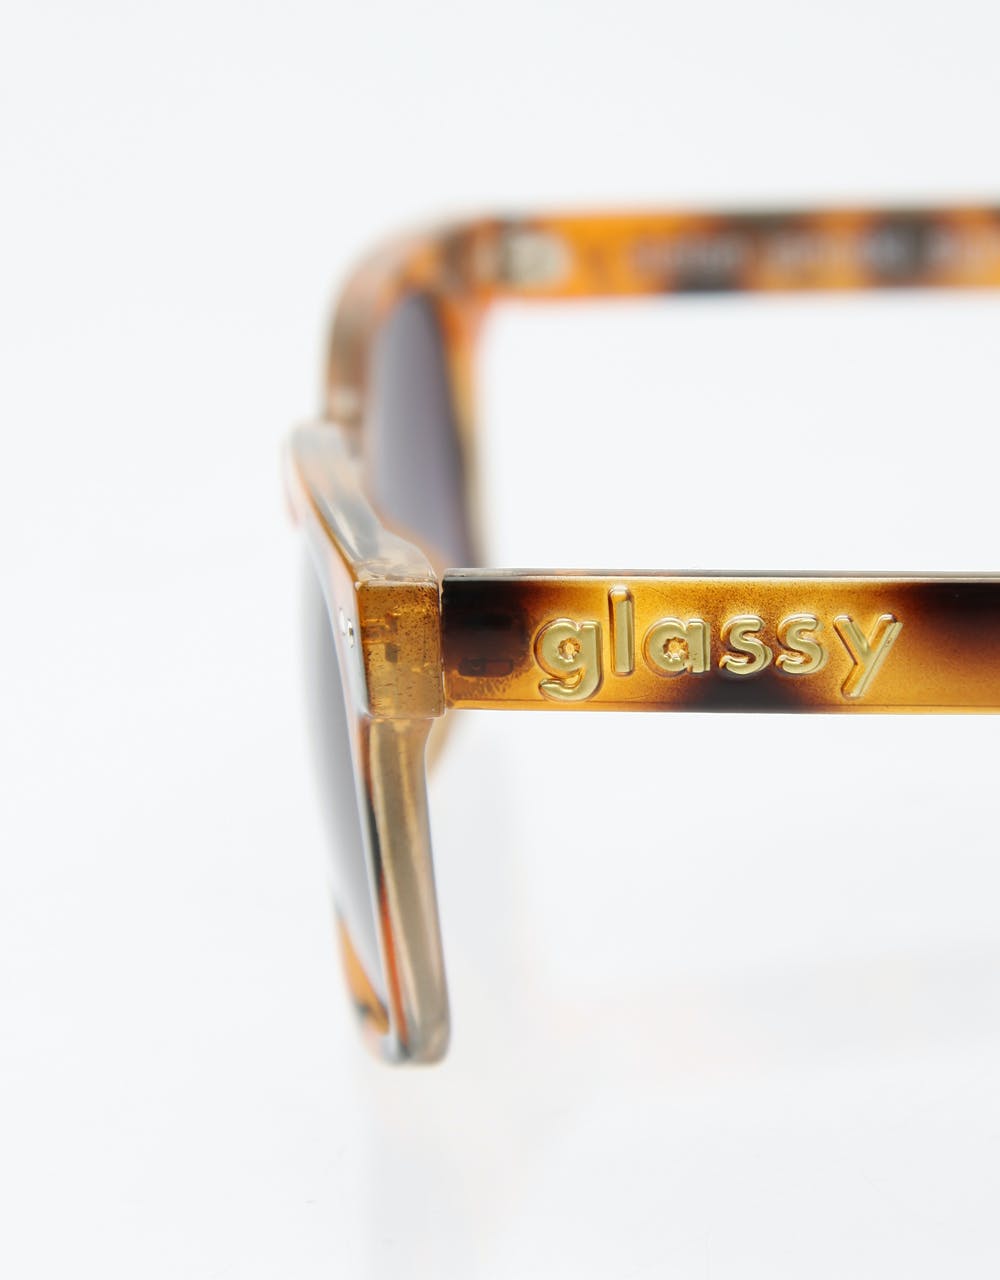 Glassy Janoski Signature Sunglasses - Tortoise Shell